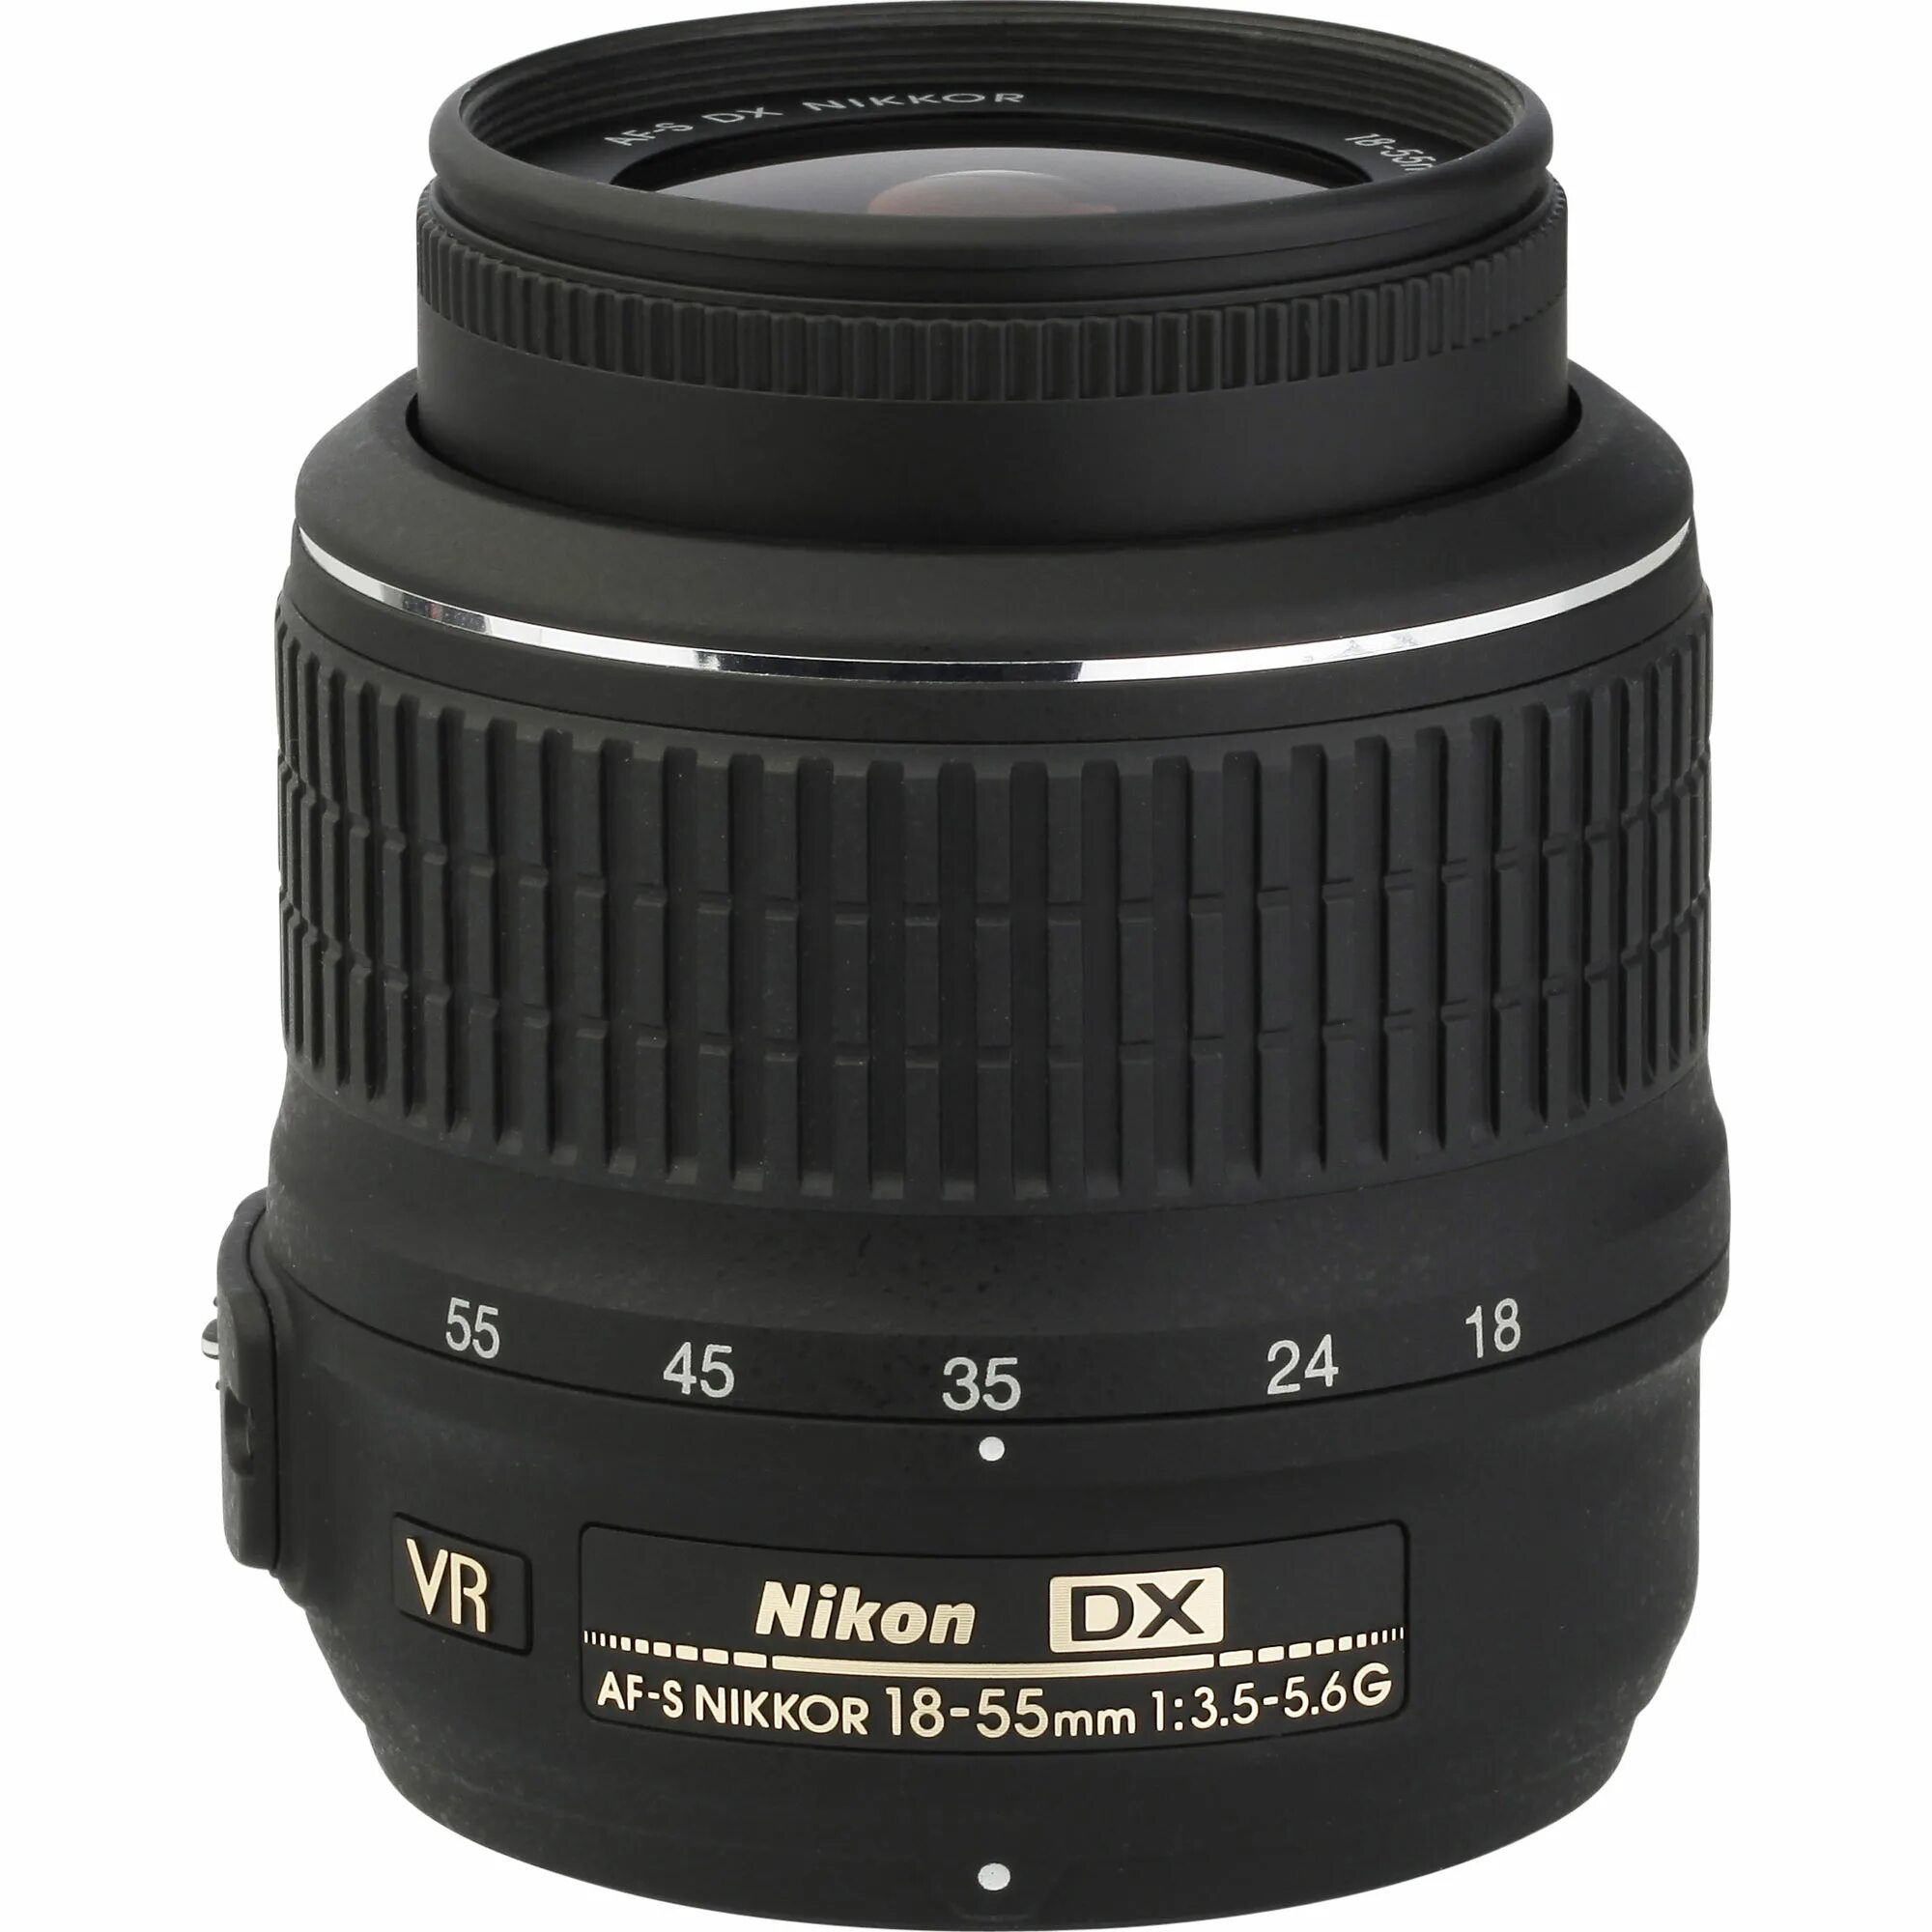 Nikkor 18 55mm vr. Nikon DX af s Nikkor 18 55mm. Nikon DX af-s Nikkor 18-55mm 1 3.5-5.6g. Af-s DX Nikkor 18-55 мм VR. Nikon DX af-s Nikkor 18-55mm 1.